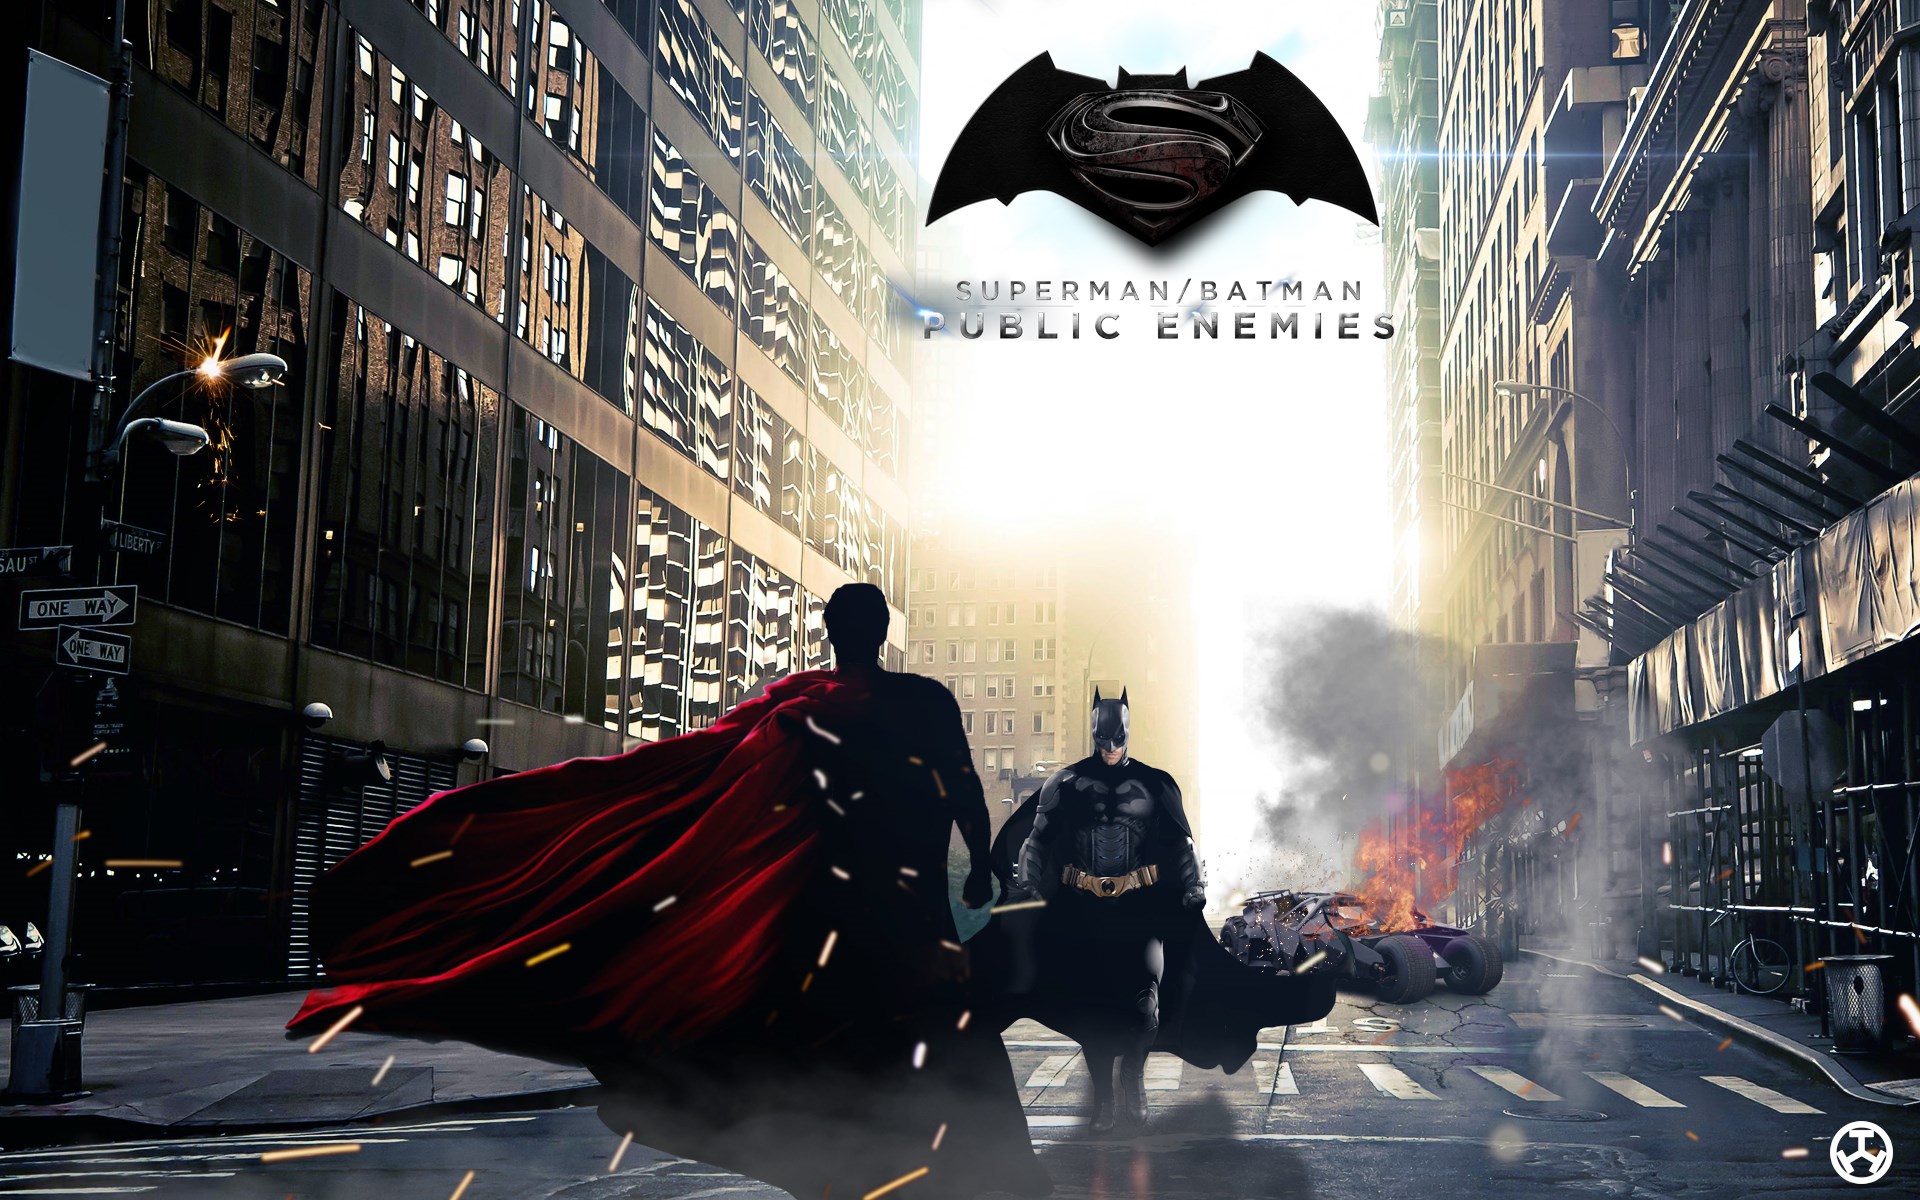 48+] Batman vs Superman Movie Wallpapers - WallpaperSafari